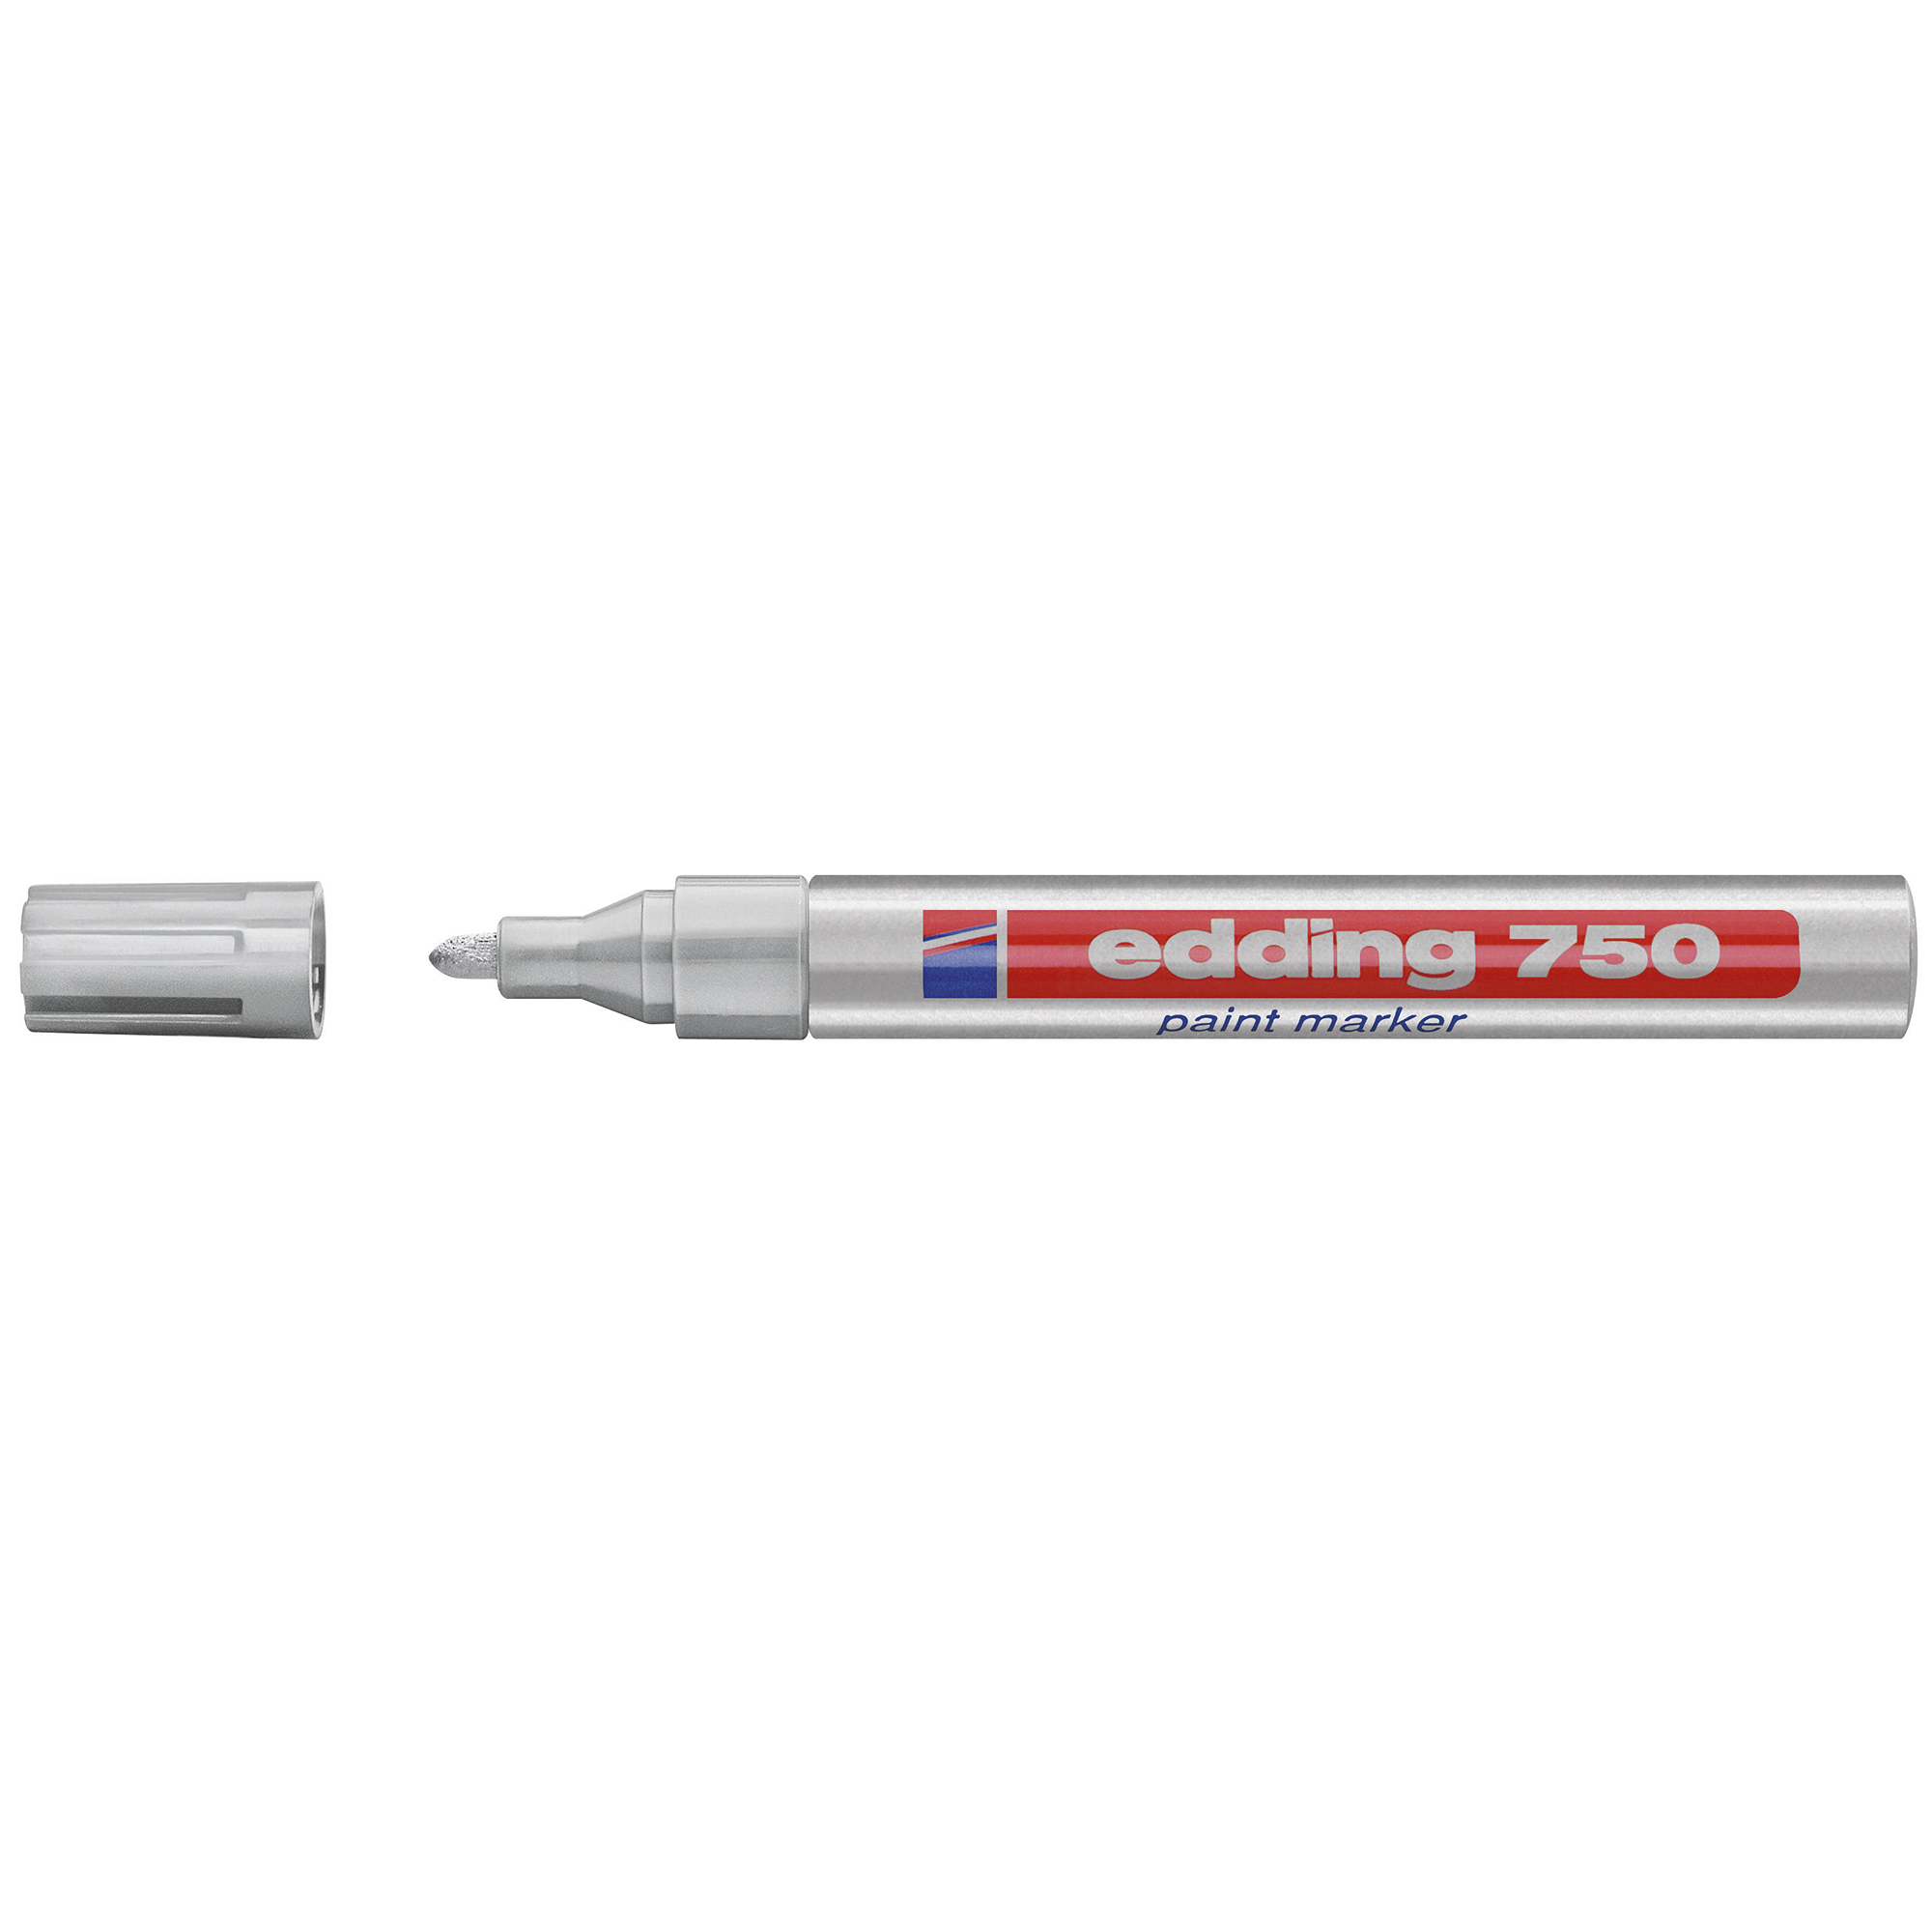 Маркер по железу. Маркер Edding 750. Маркер Paint Marker Edding 750 по металлу. Edding e-750. Маркер Edding 750 белый.